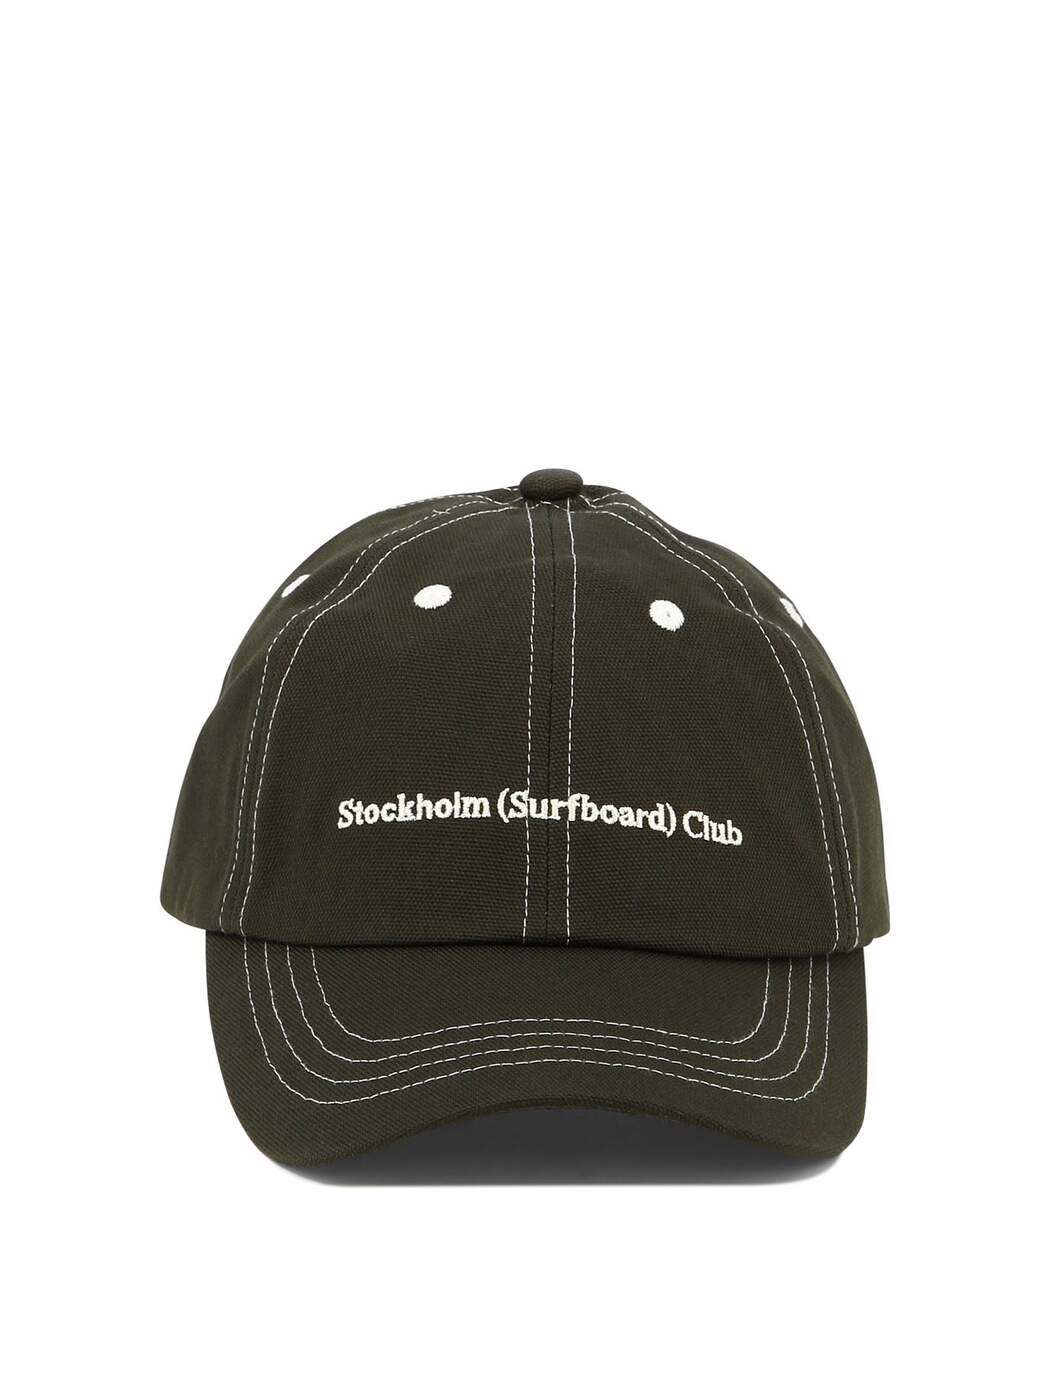 STOCKHOLM SURFBOARD CLUB ストックホルムサーフボードクラブ ブラウン Brown 帽子 メンズ 8308752973973  ba